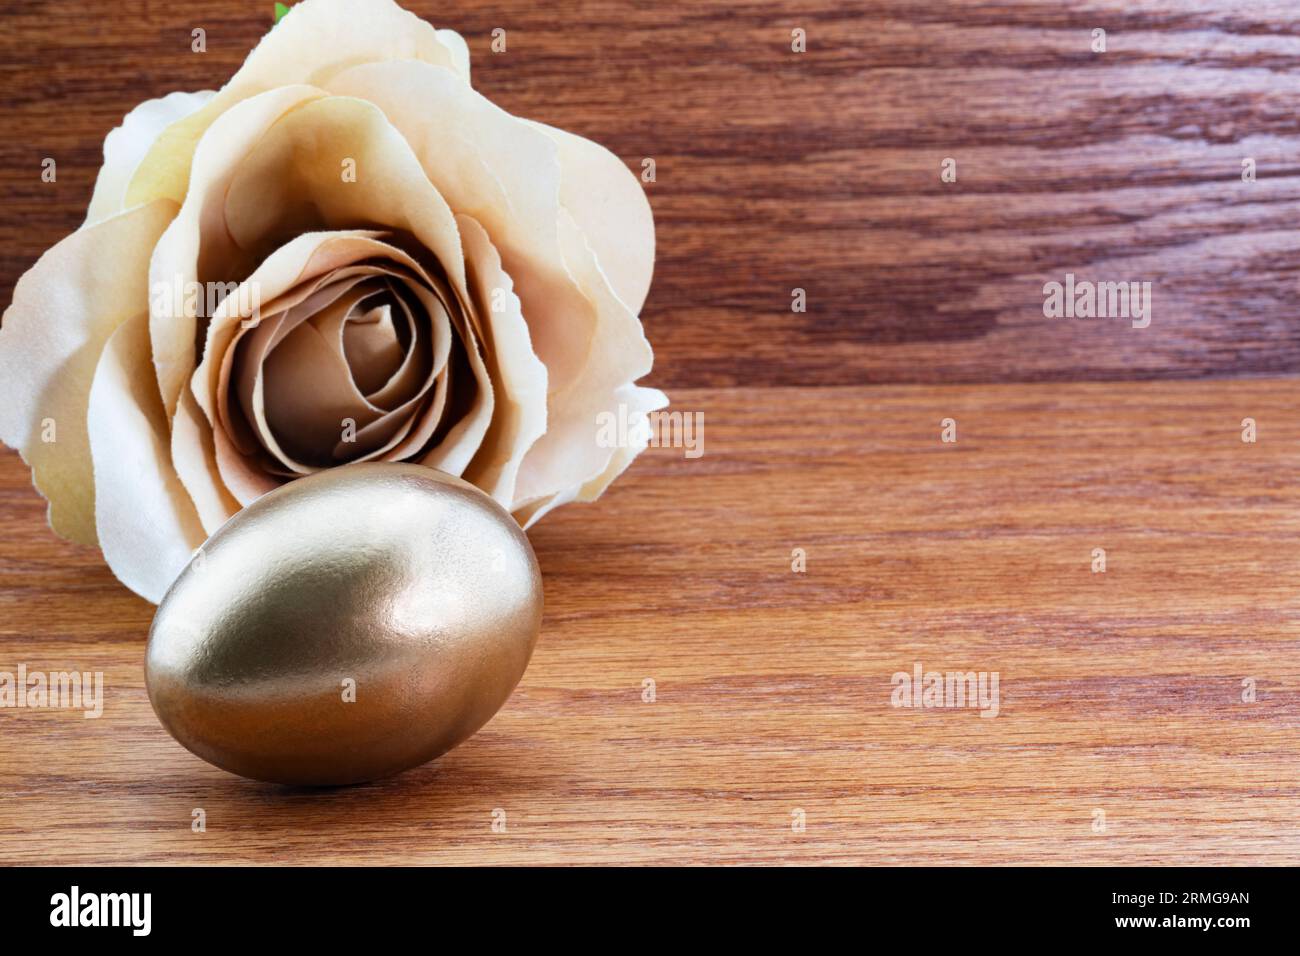 L'œuf de nid d'or avec rose beige sur bois est le reflet élégant du succès commercial gagnant et des investissements financiers intelligents Banque D'Images